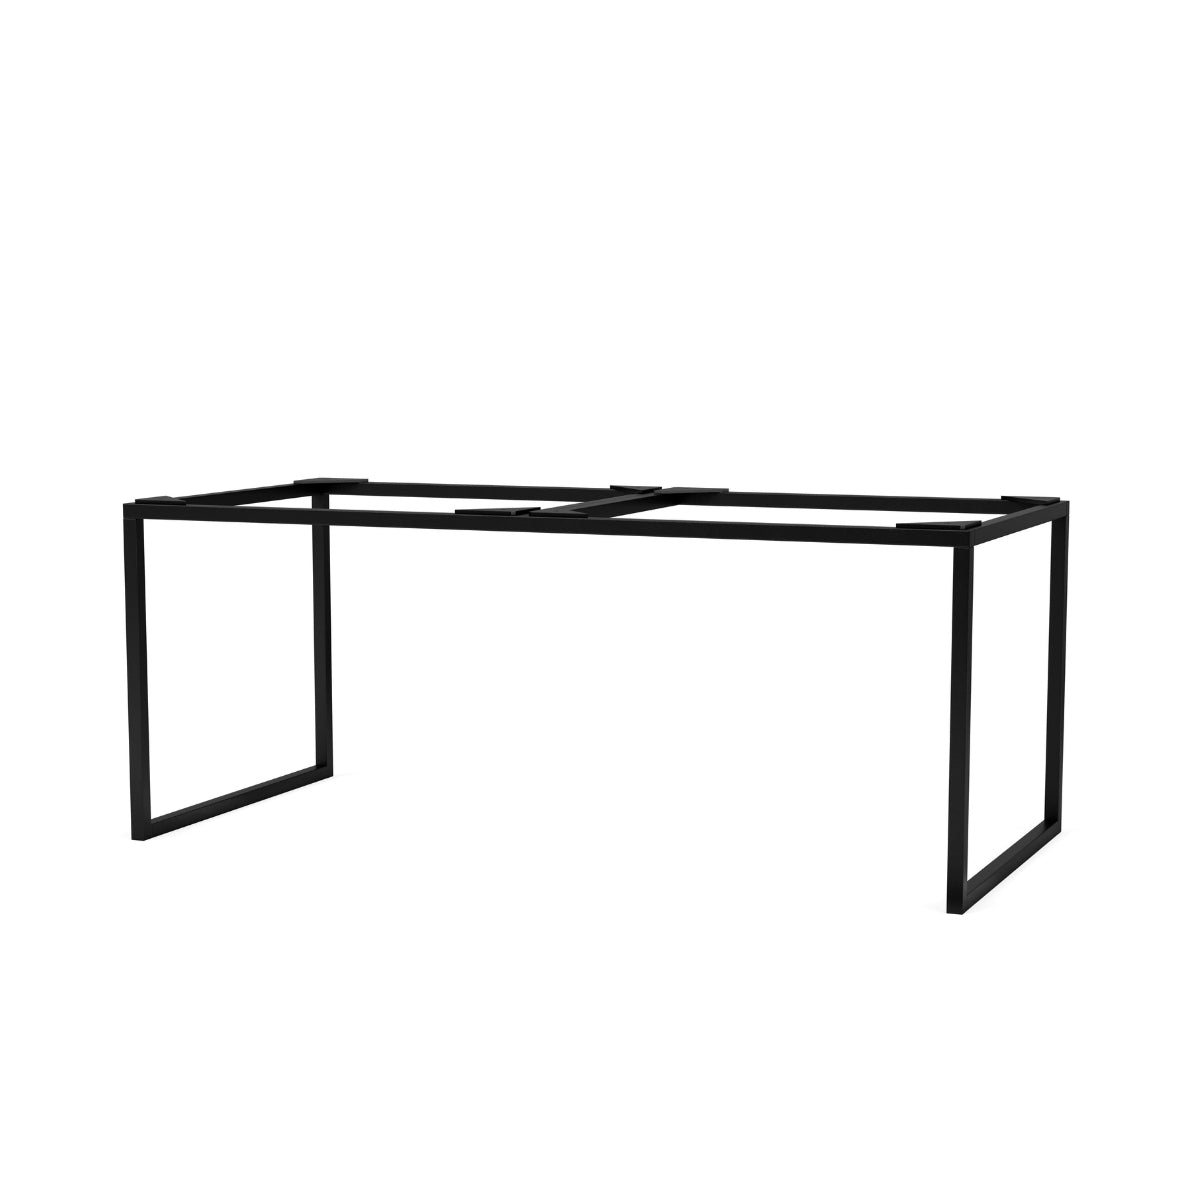 Audo Copenhagen | Double base for Frame 35, height 28 cm